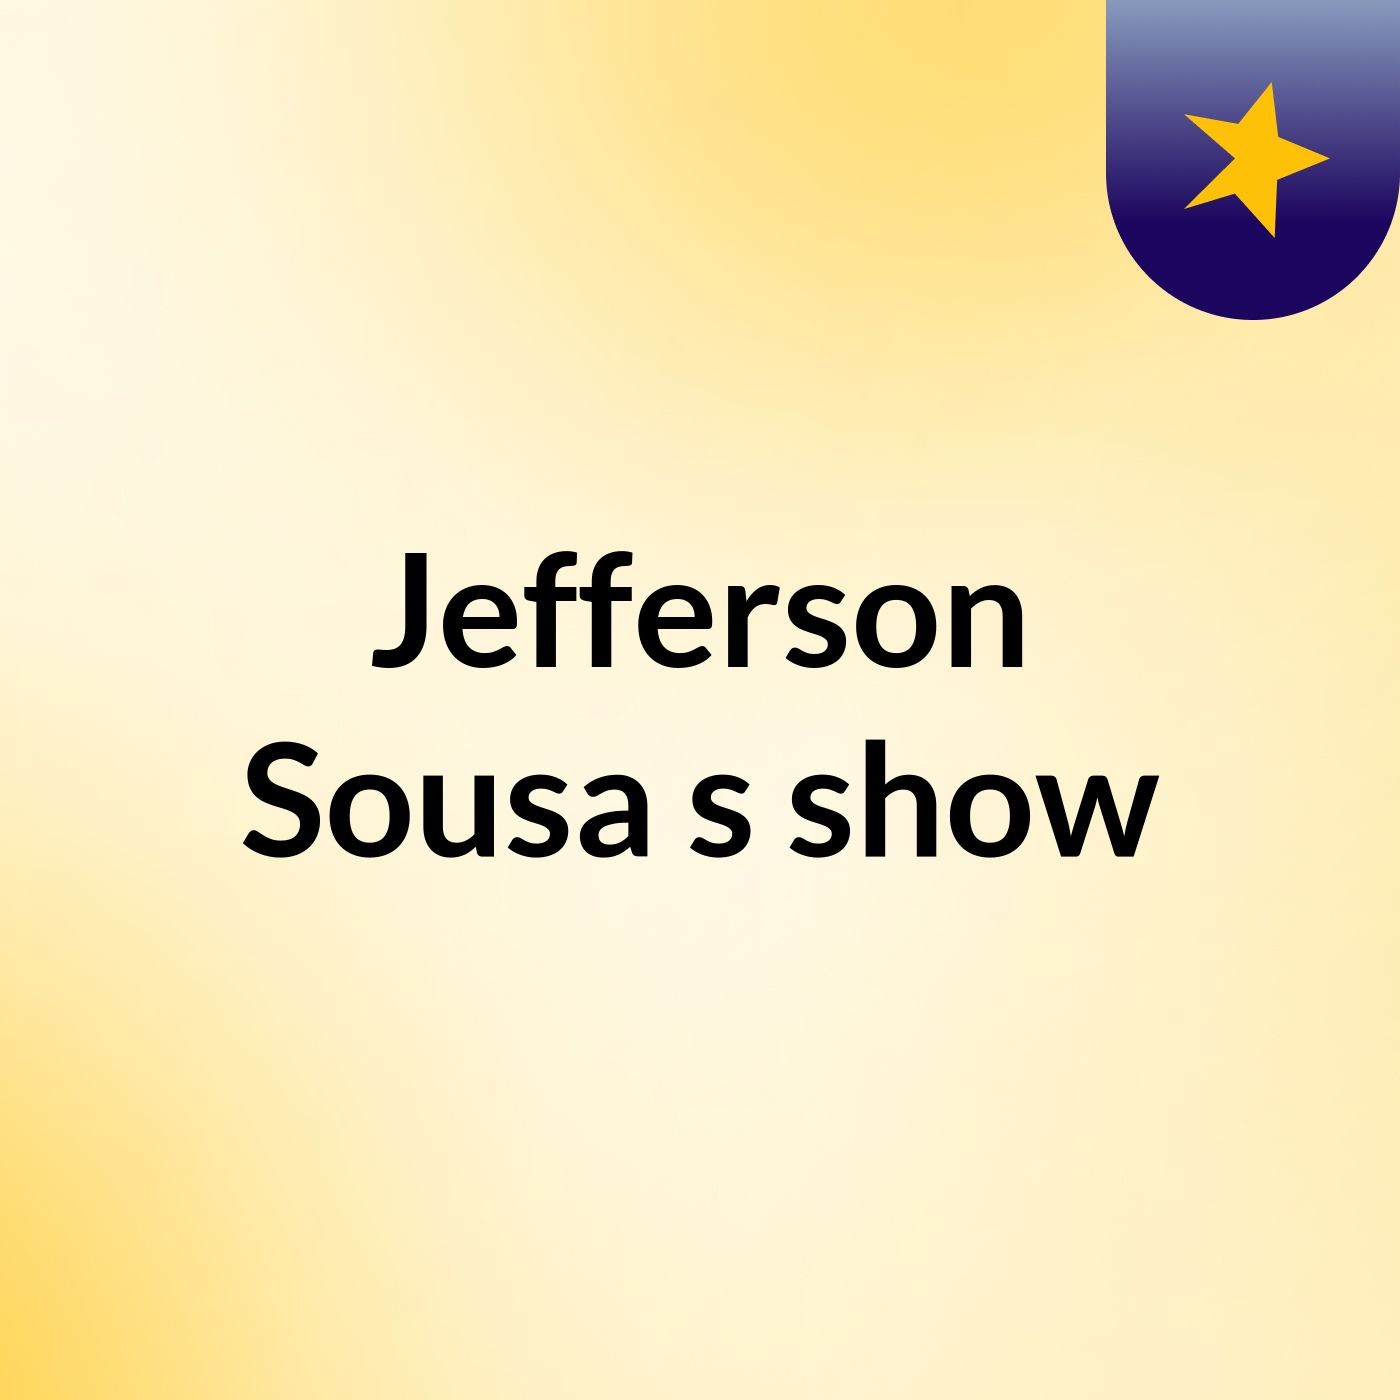 Jefferson Sousa's show